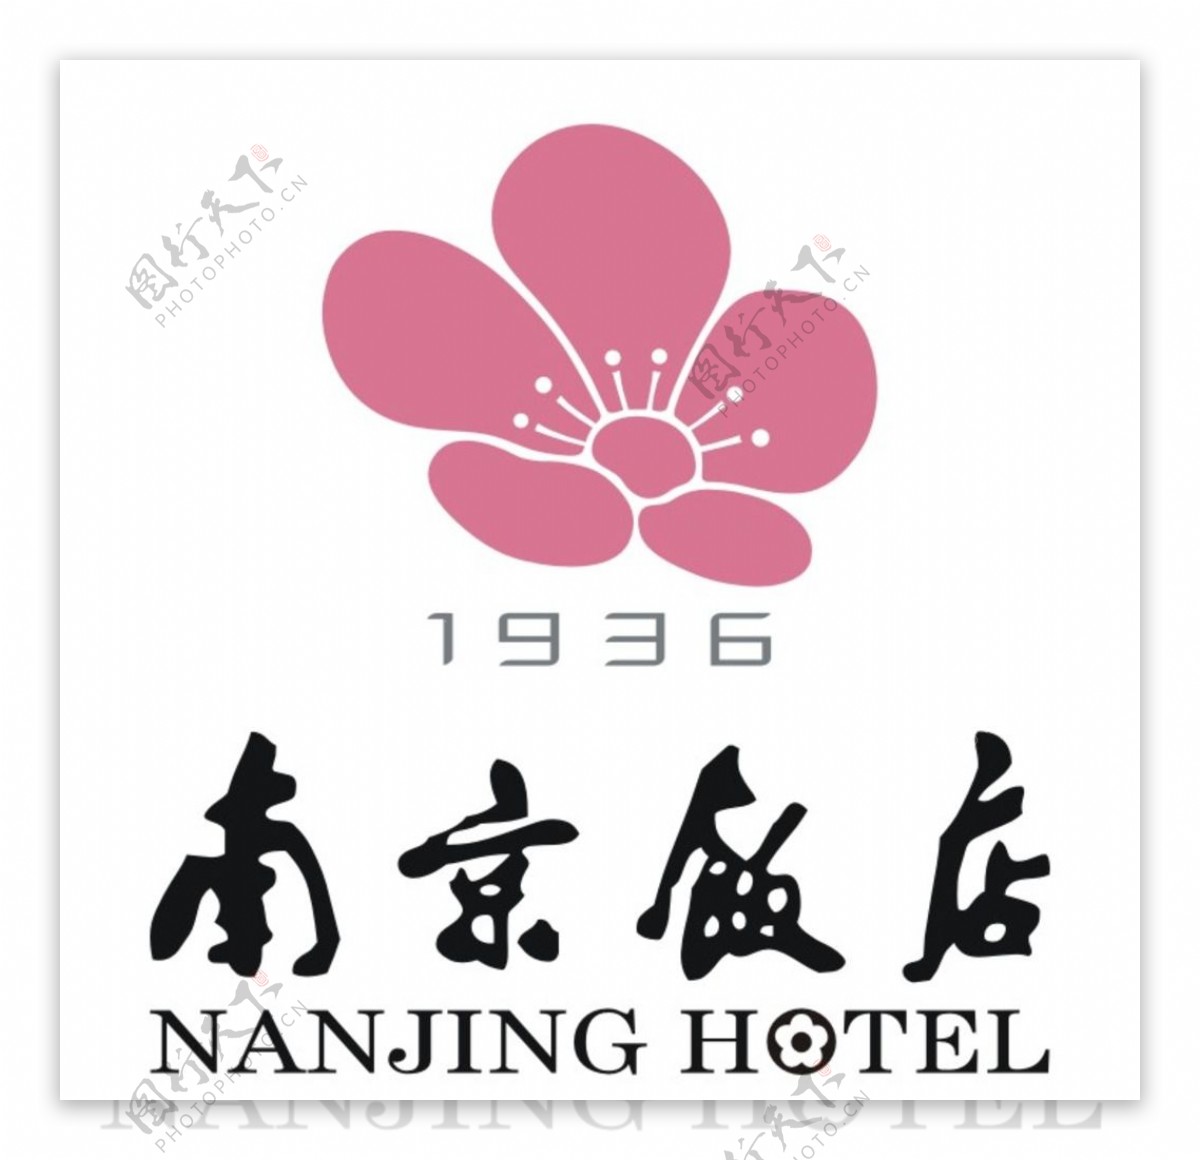 南京饭店logo